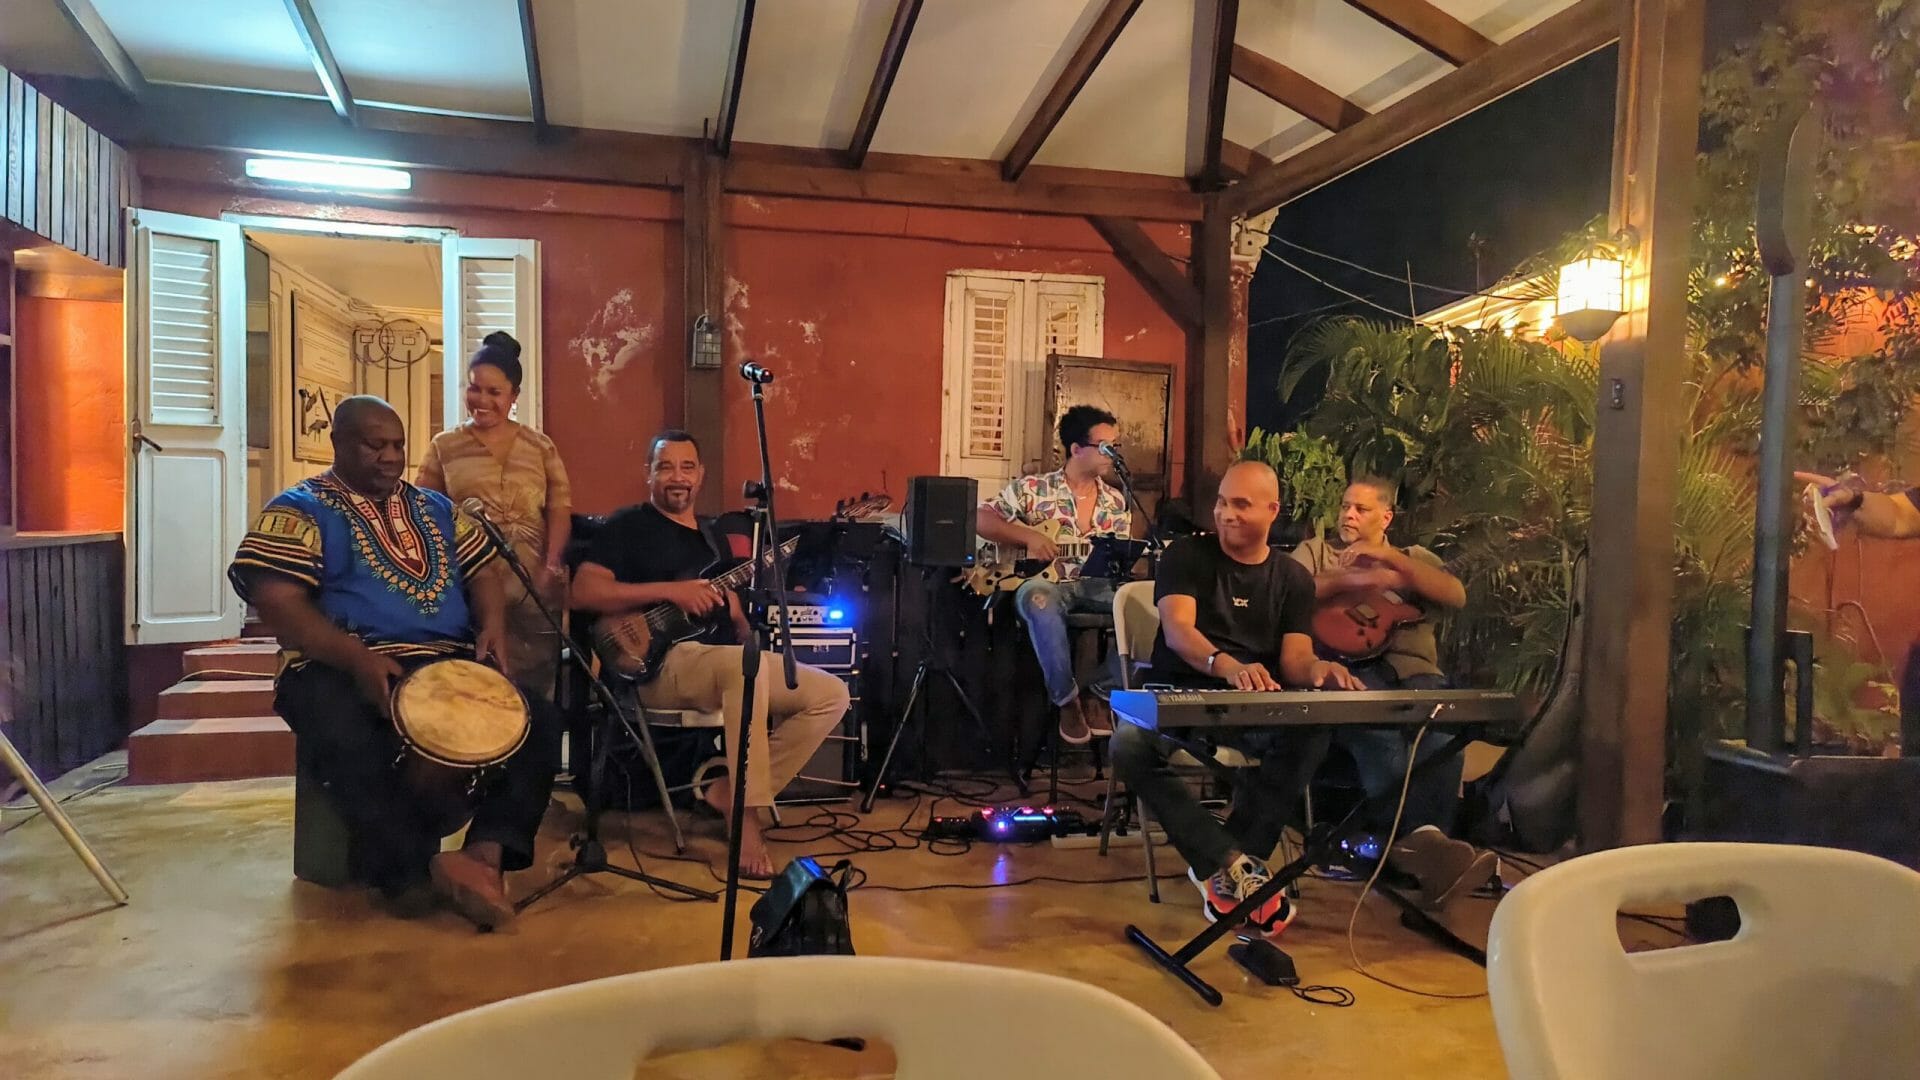 Ontdek de muziekcultuur van Curaçao